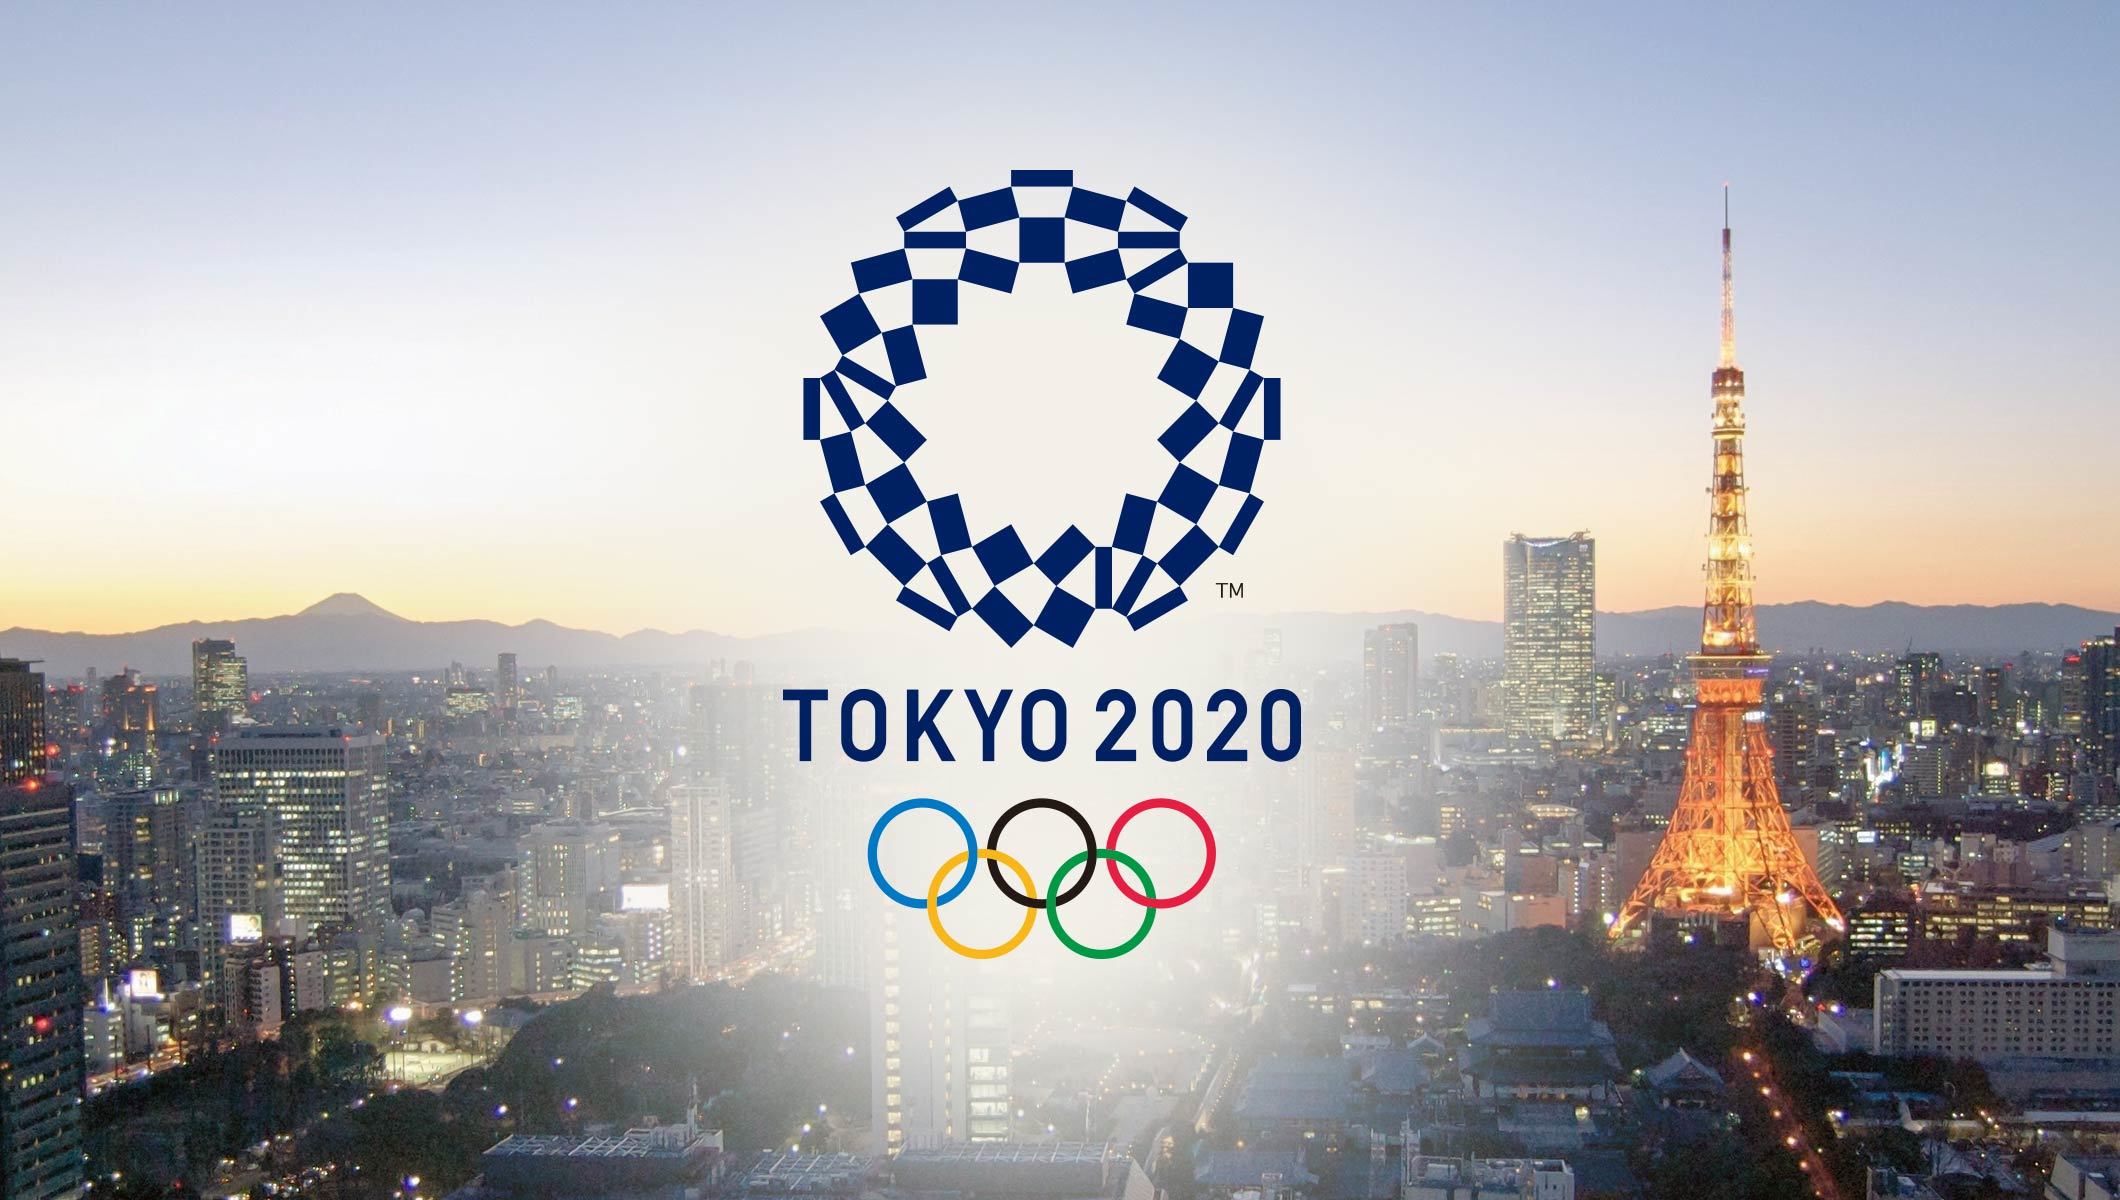 تماشاگران مسابقات المپیک توکیو ۲۰۲۰ از عکس برداری منع شدند